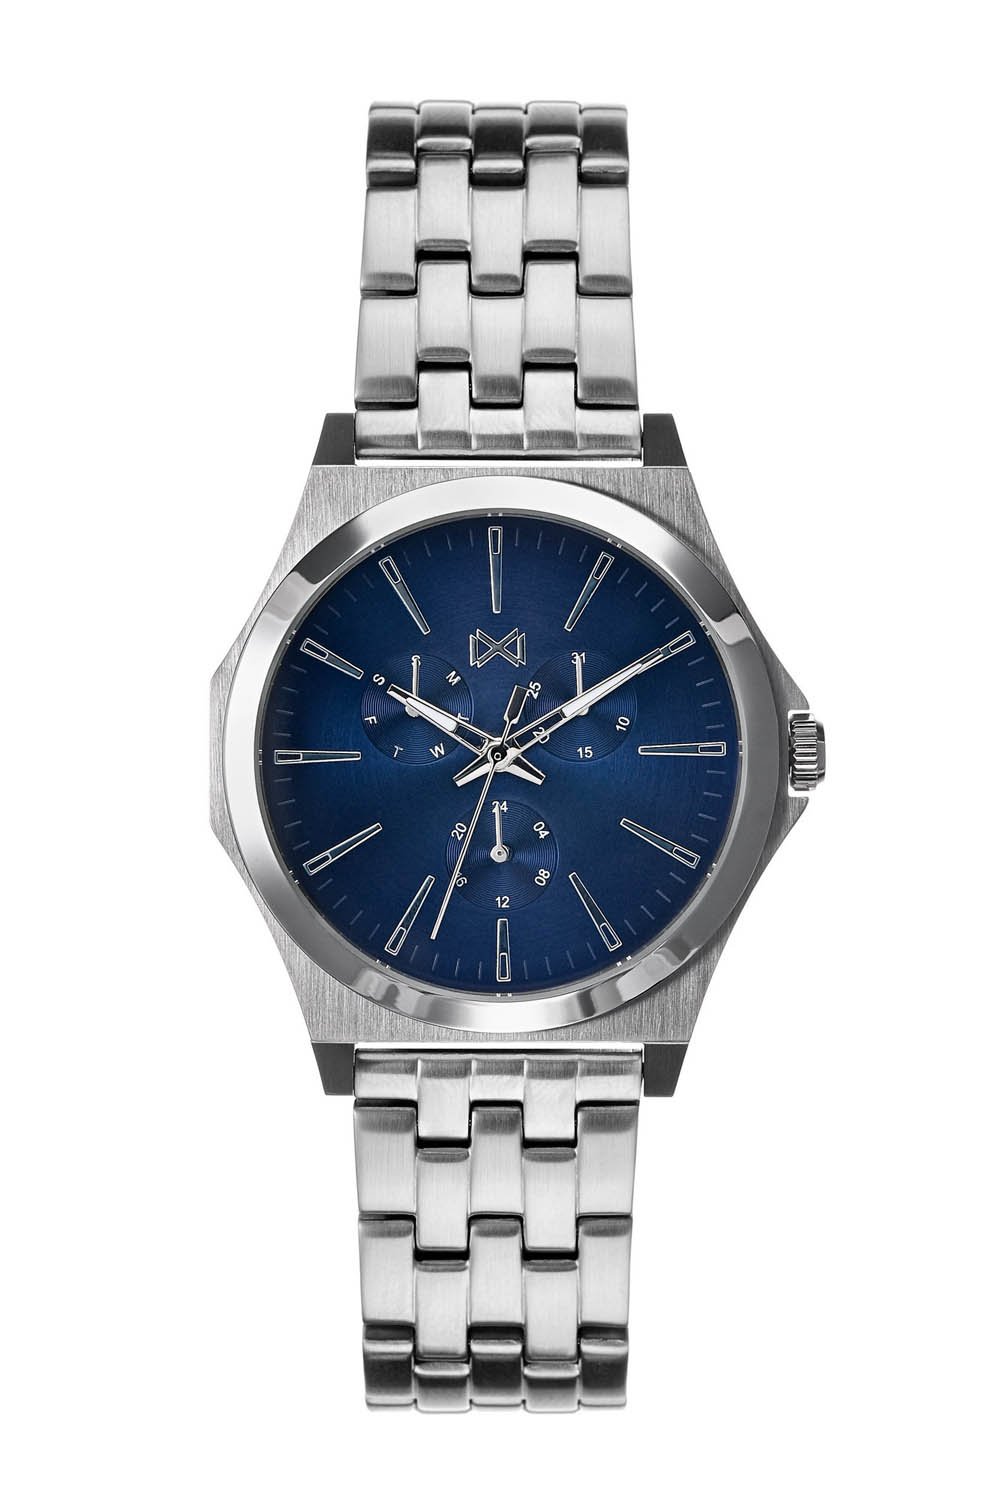 Reloj Mark Maddox Marina HM7102-37 Hombre Azul - Francisco Ortuño